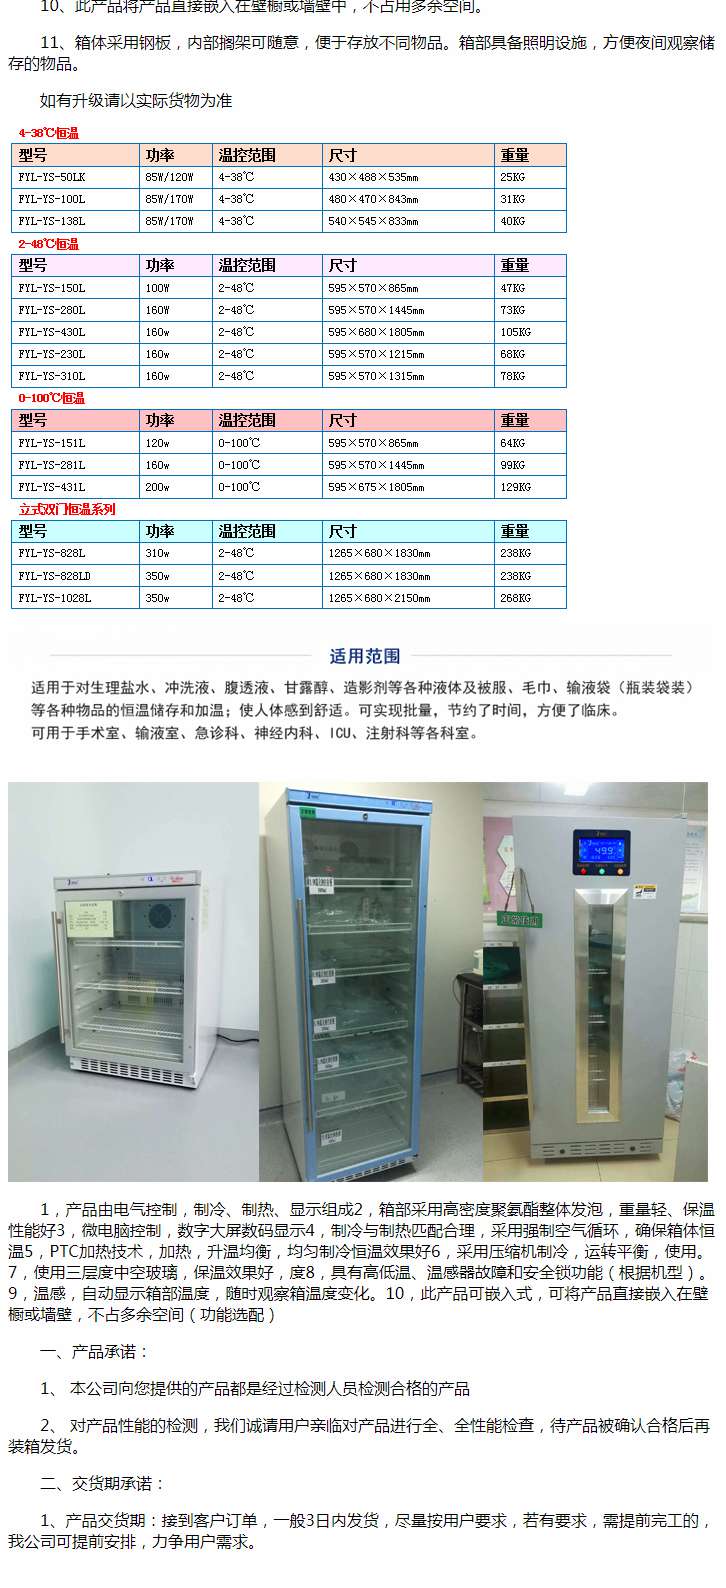 20-25度药品恒温柜FYL-YS-50LK双锁冰箱临床用可做校准